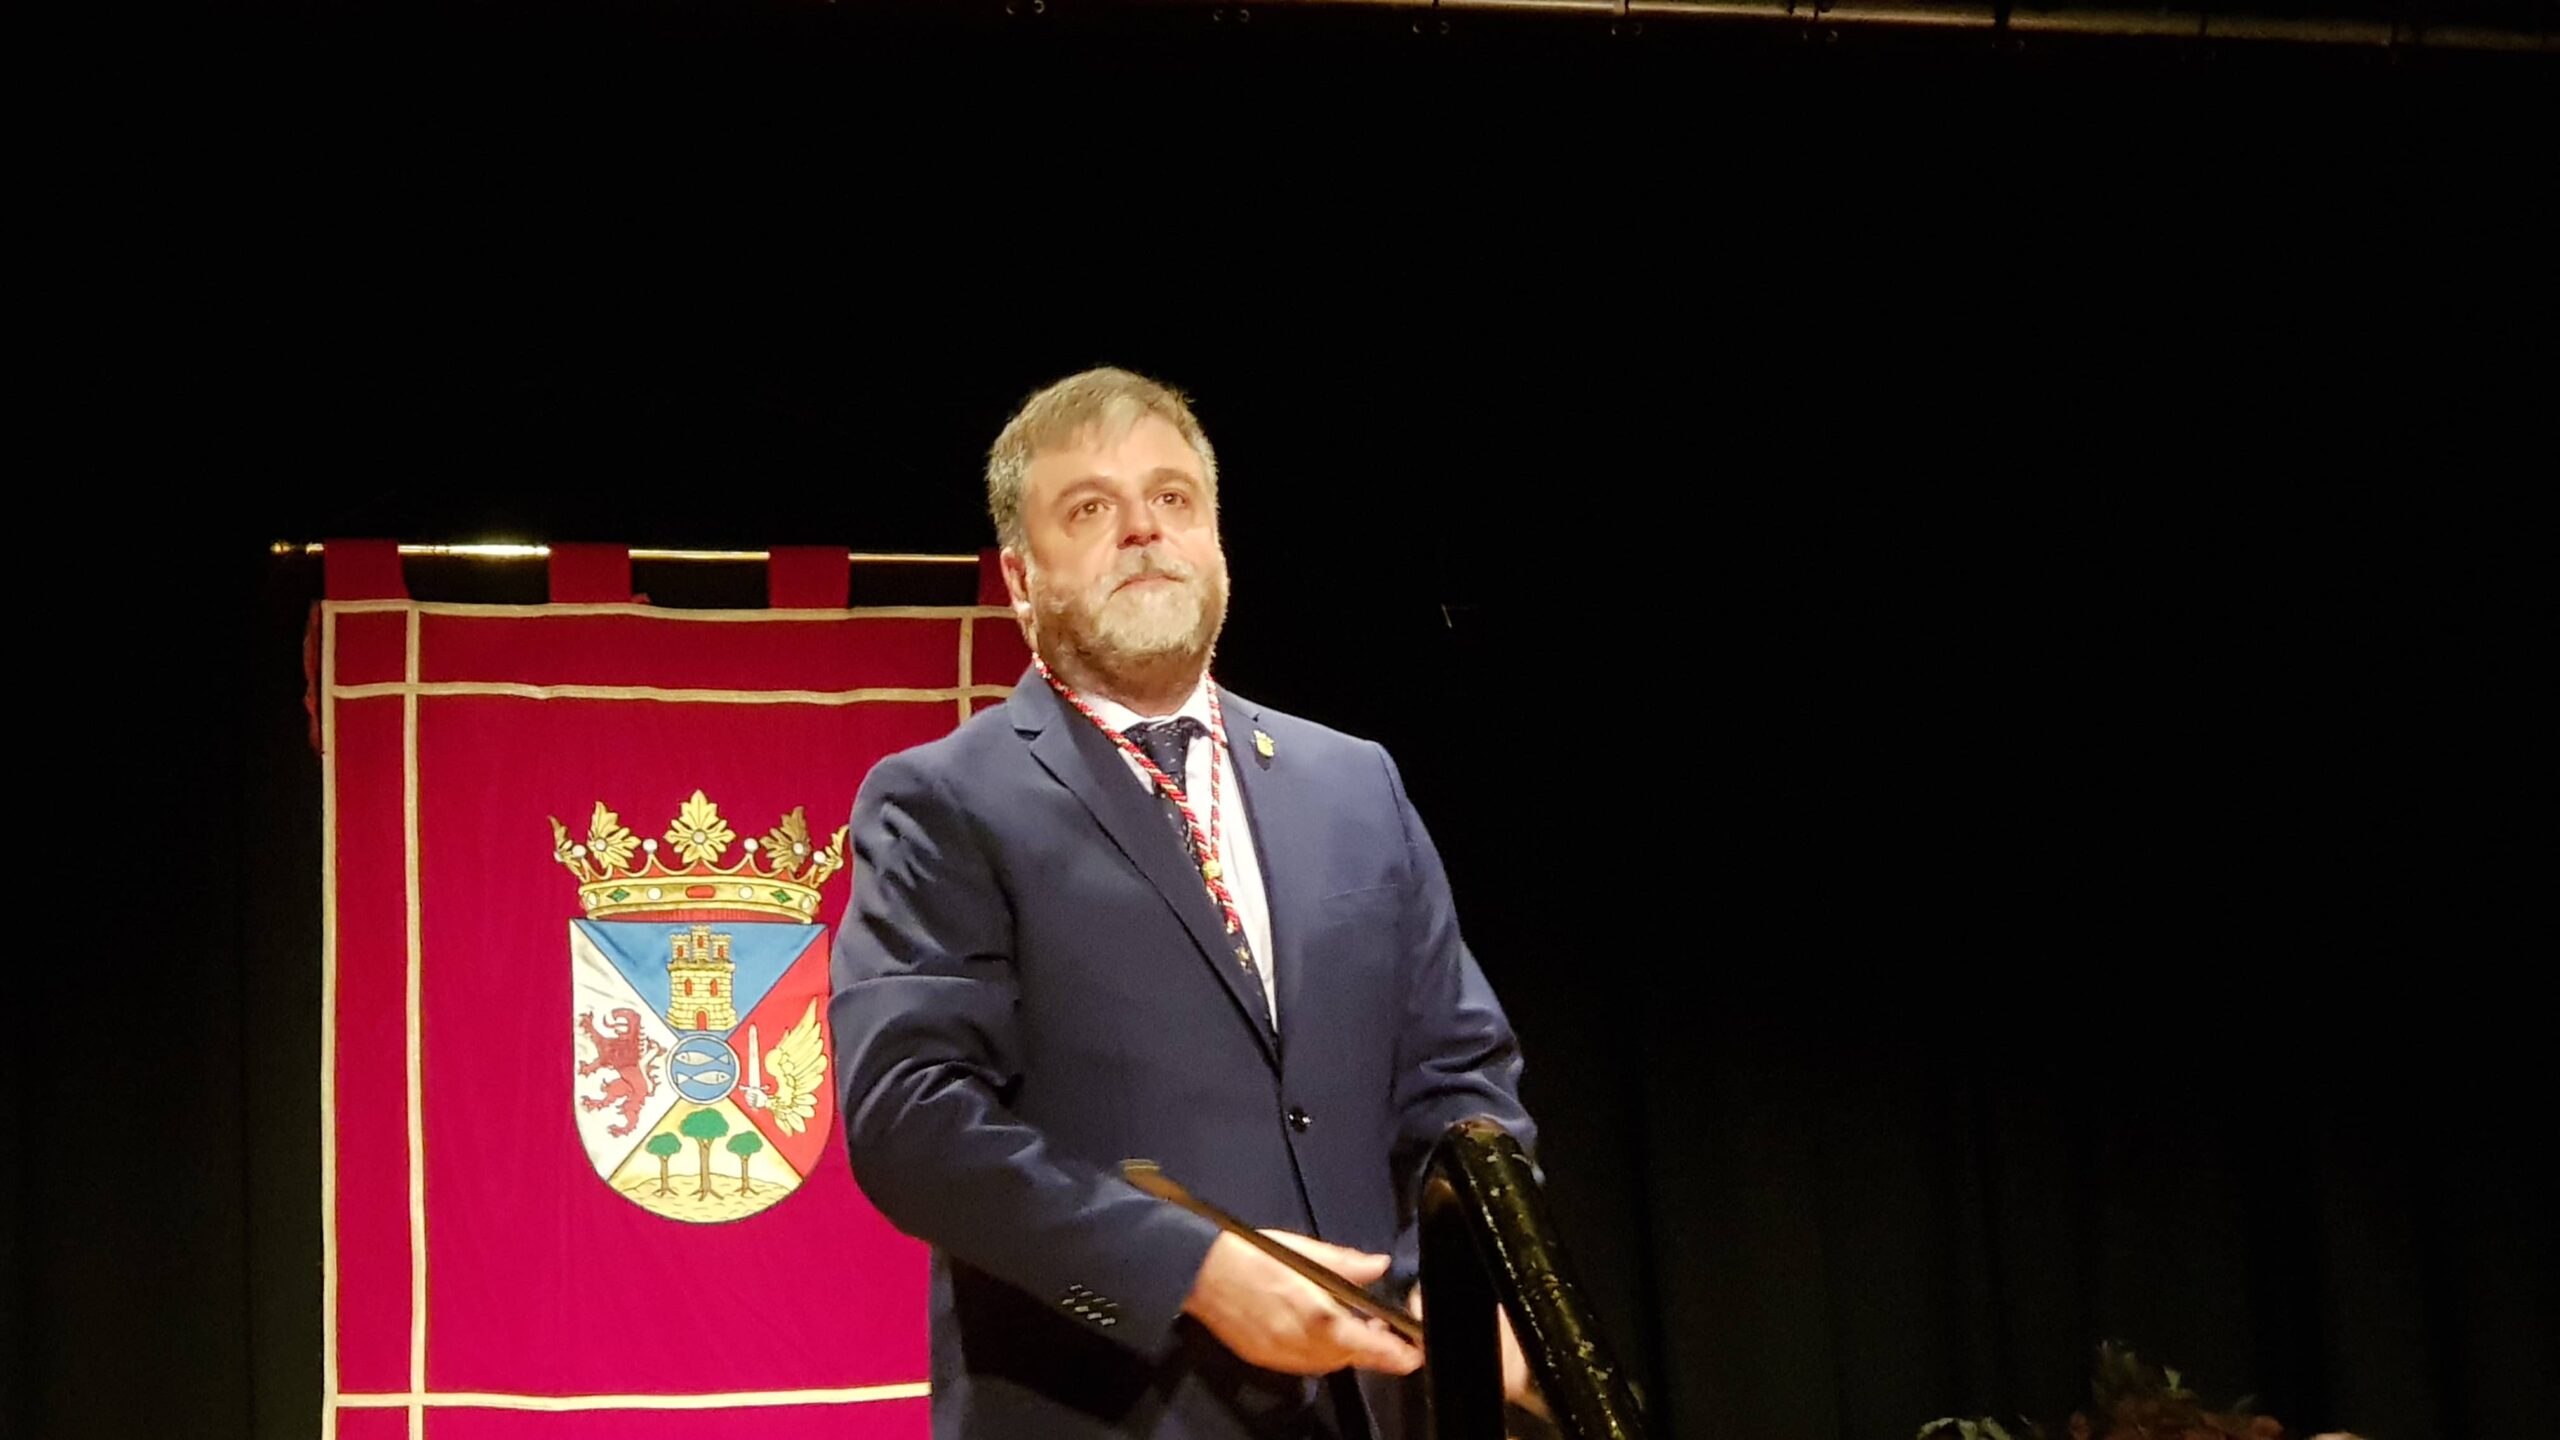 El nuevo alcalde de Villena, Fulgencio Cerdán, apuesta por recupera la ilusión y acabar con el ilusionismo